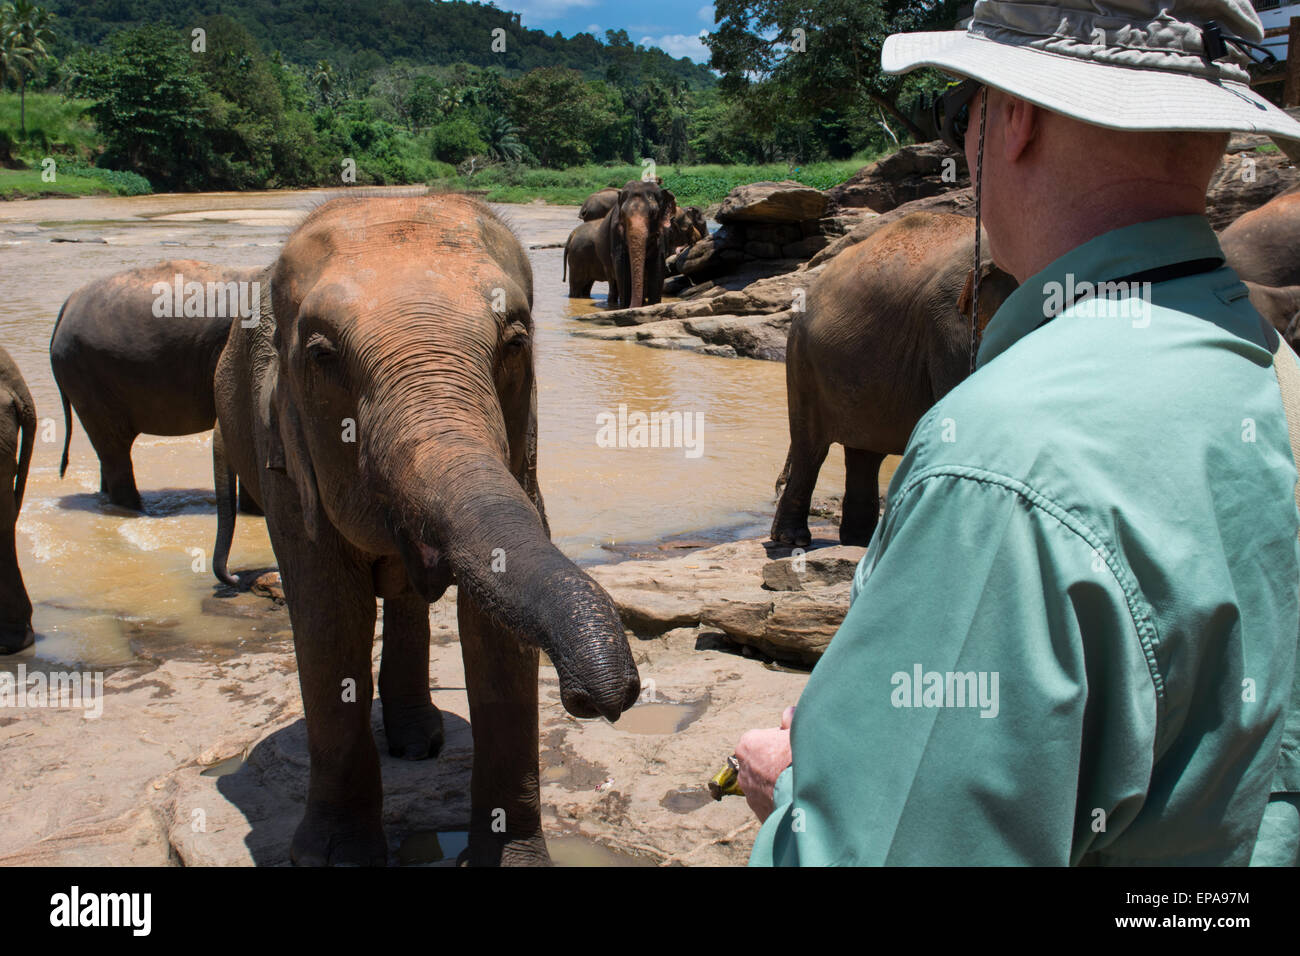 Sri Lanka, Pinnawela Elephant Orphanage, est. in 1975 by the Wildlife Department. Tourist feeding orphaned elephant. Stock Photo